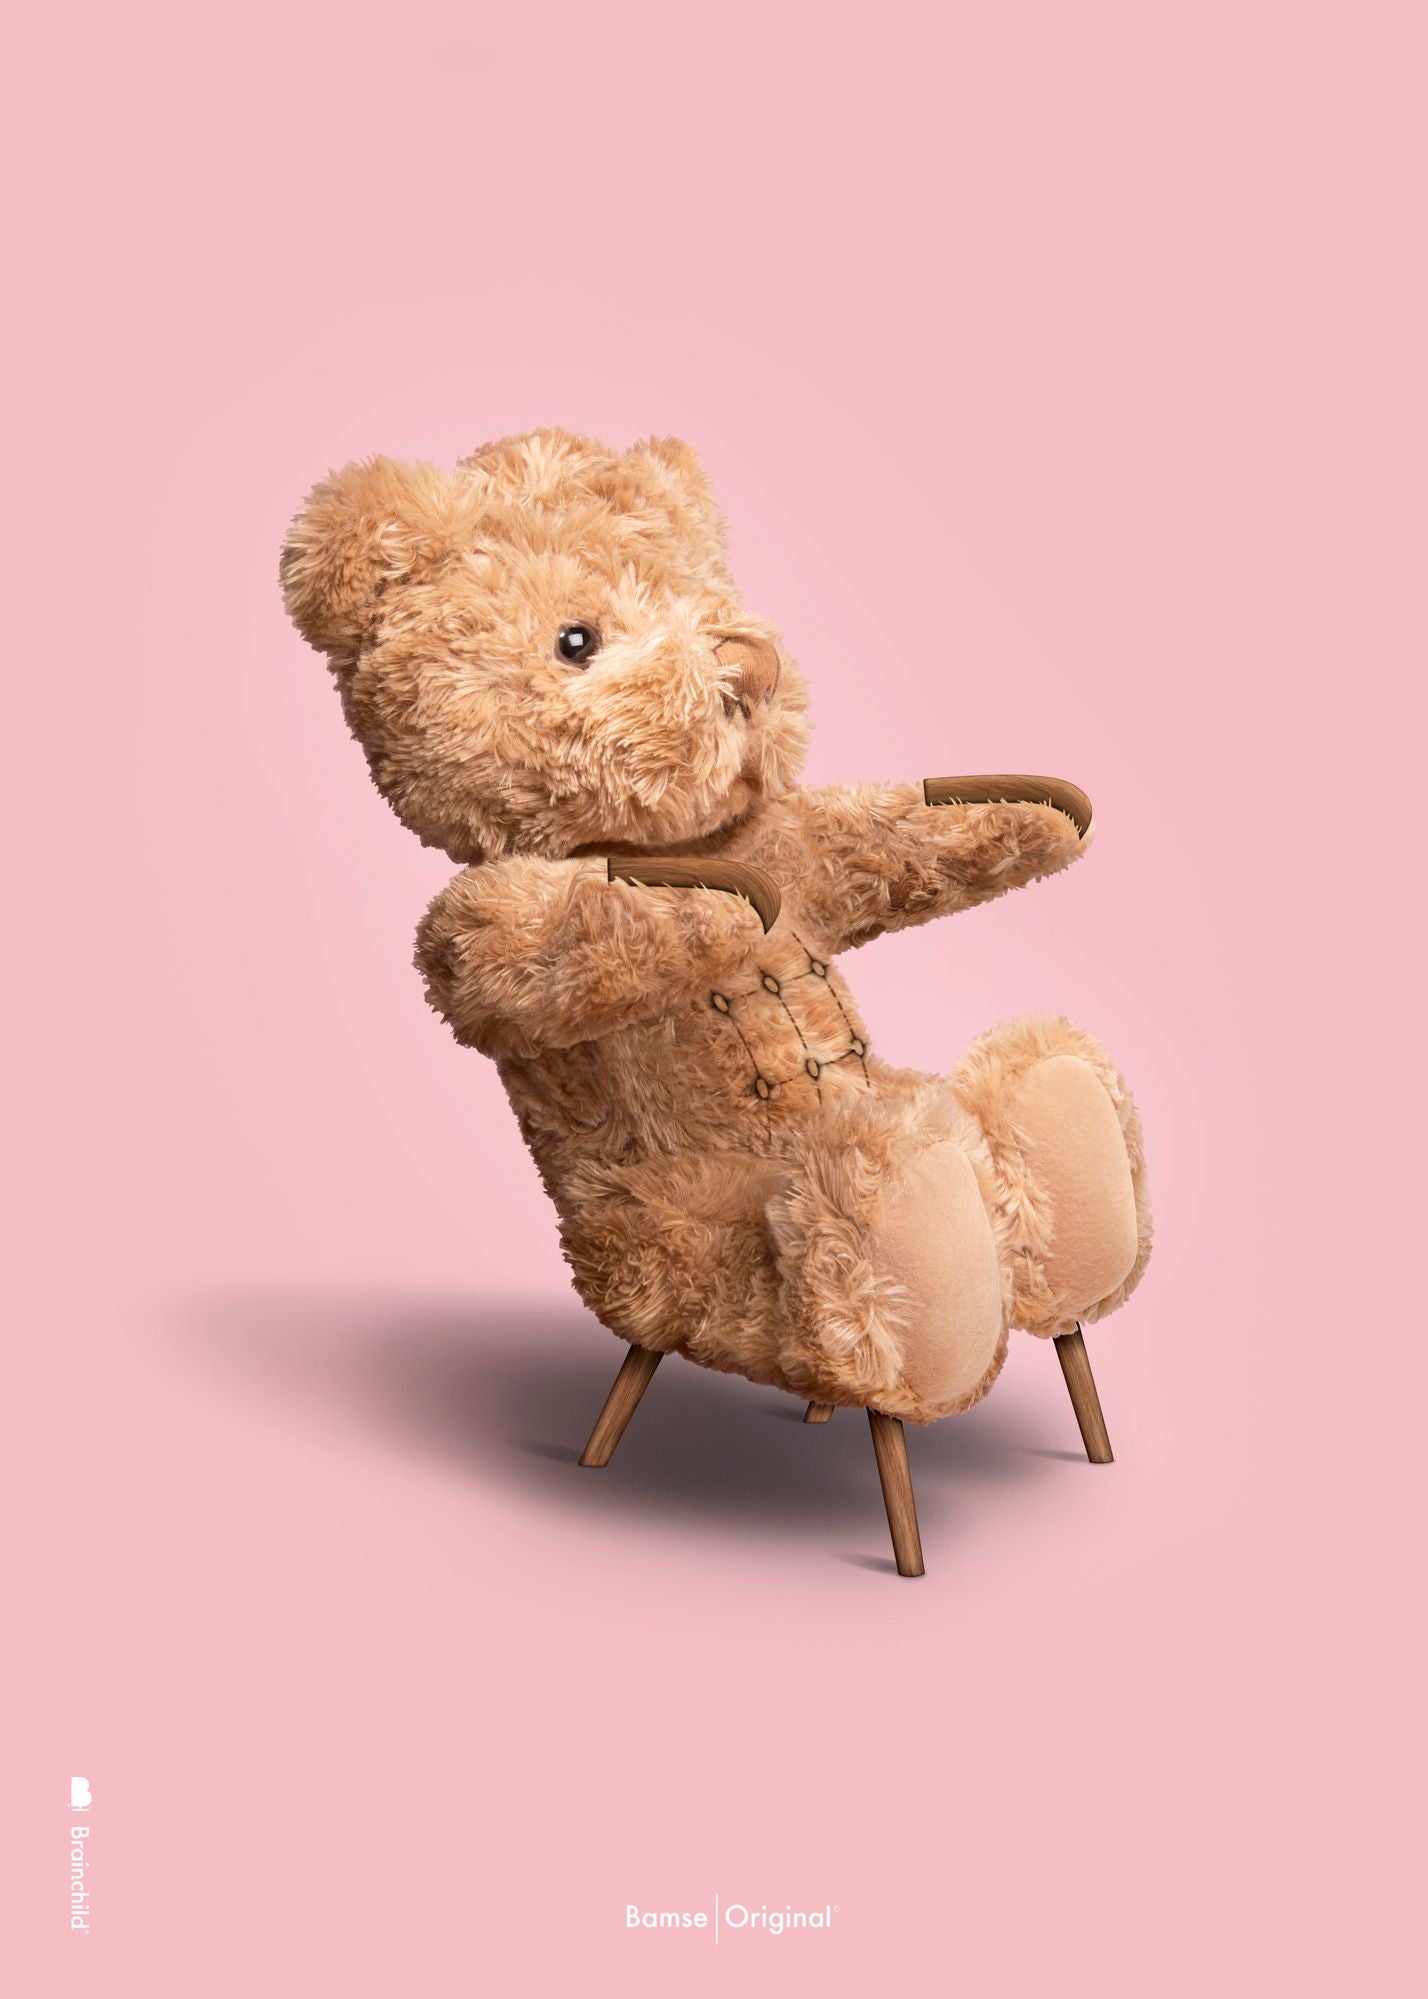 Brainchild Teddy Bear Classic Plakat uden ramme A5, lyserød baggrund